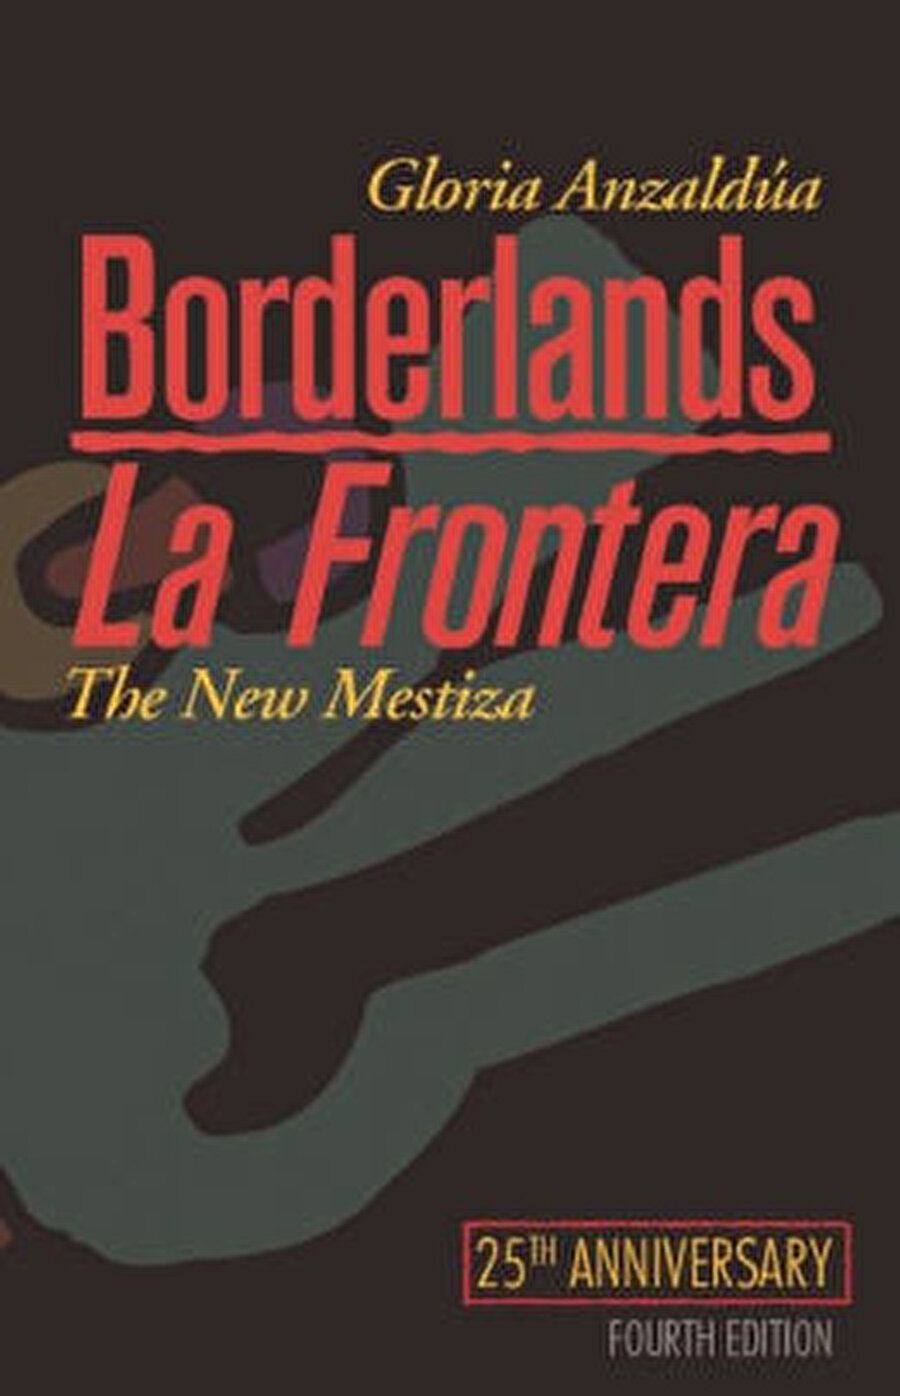  Gloria Anzaldua’nın Borderlands/La Frontera adlı kitabı Mignolo’nun farkında olmaksızın sınırlar içinde yaşadığını fark etmesini sağlar. Zira Anzaldua da “sınırlar” üzerine çalışmaz, onu deneyimler.